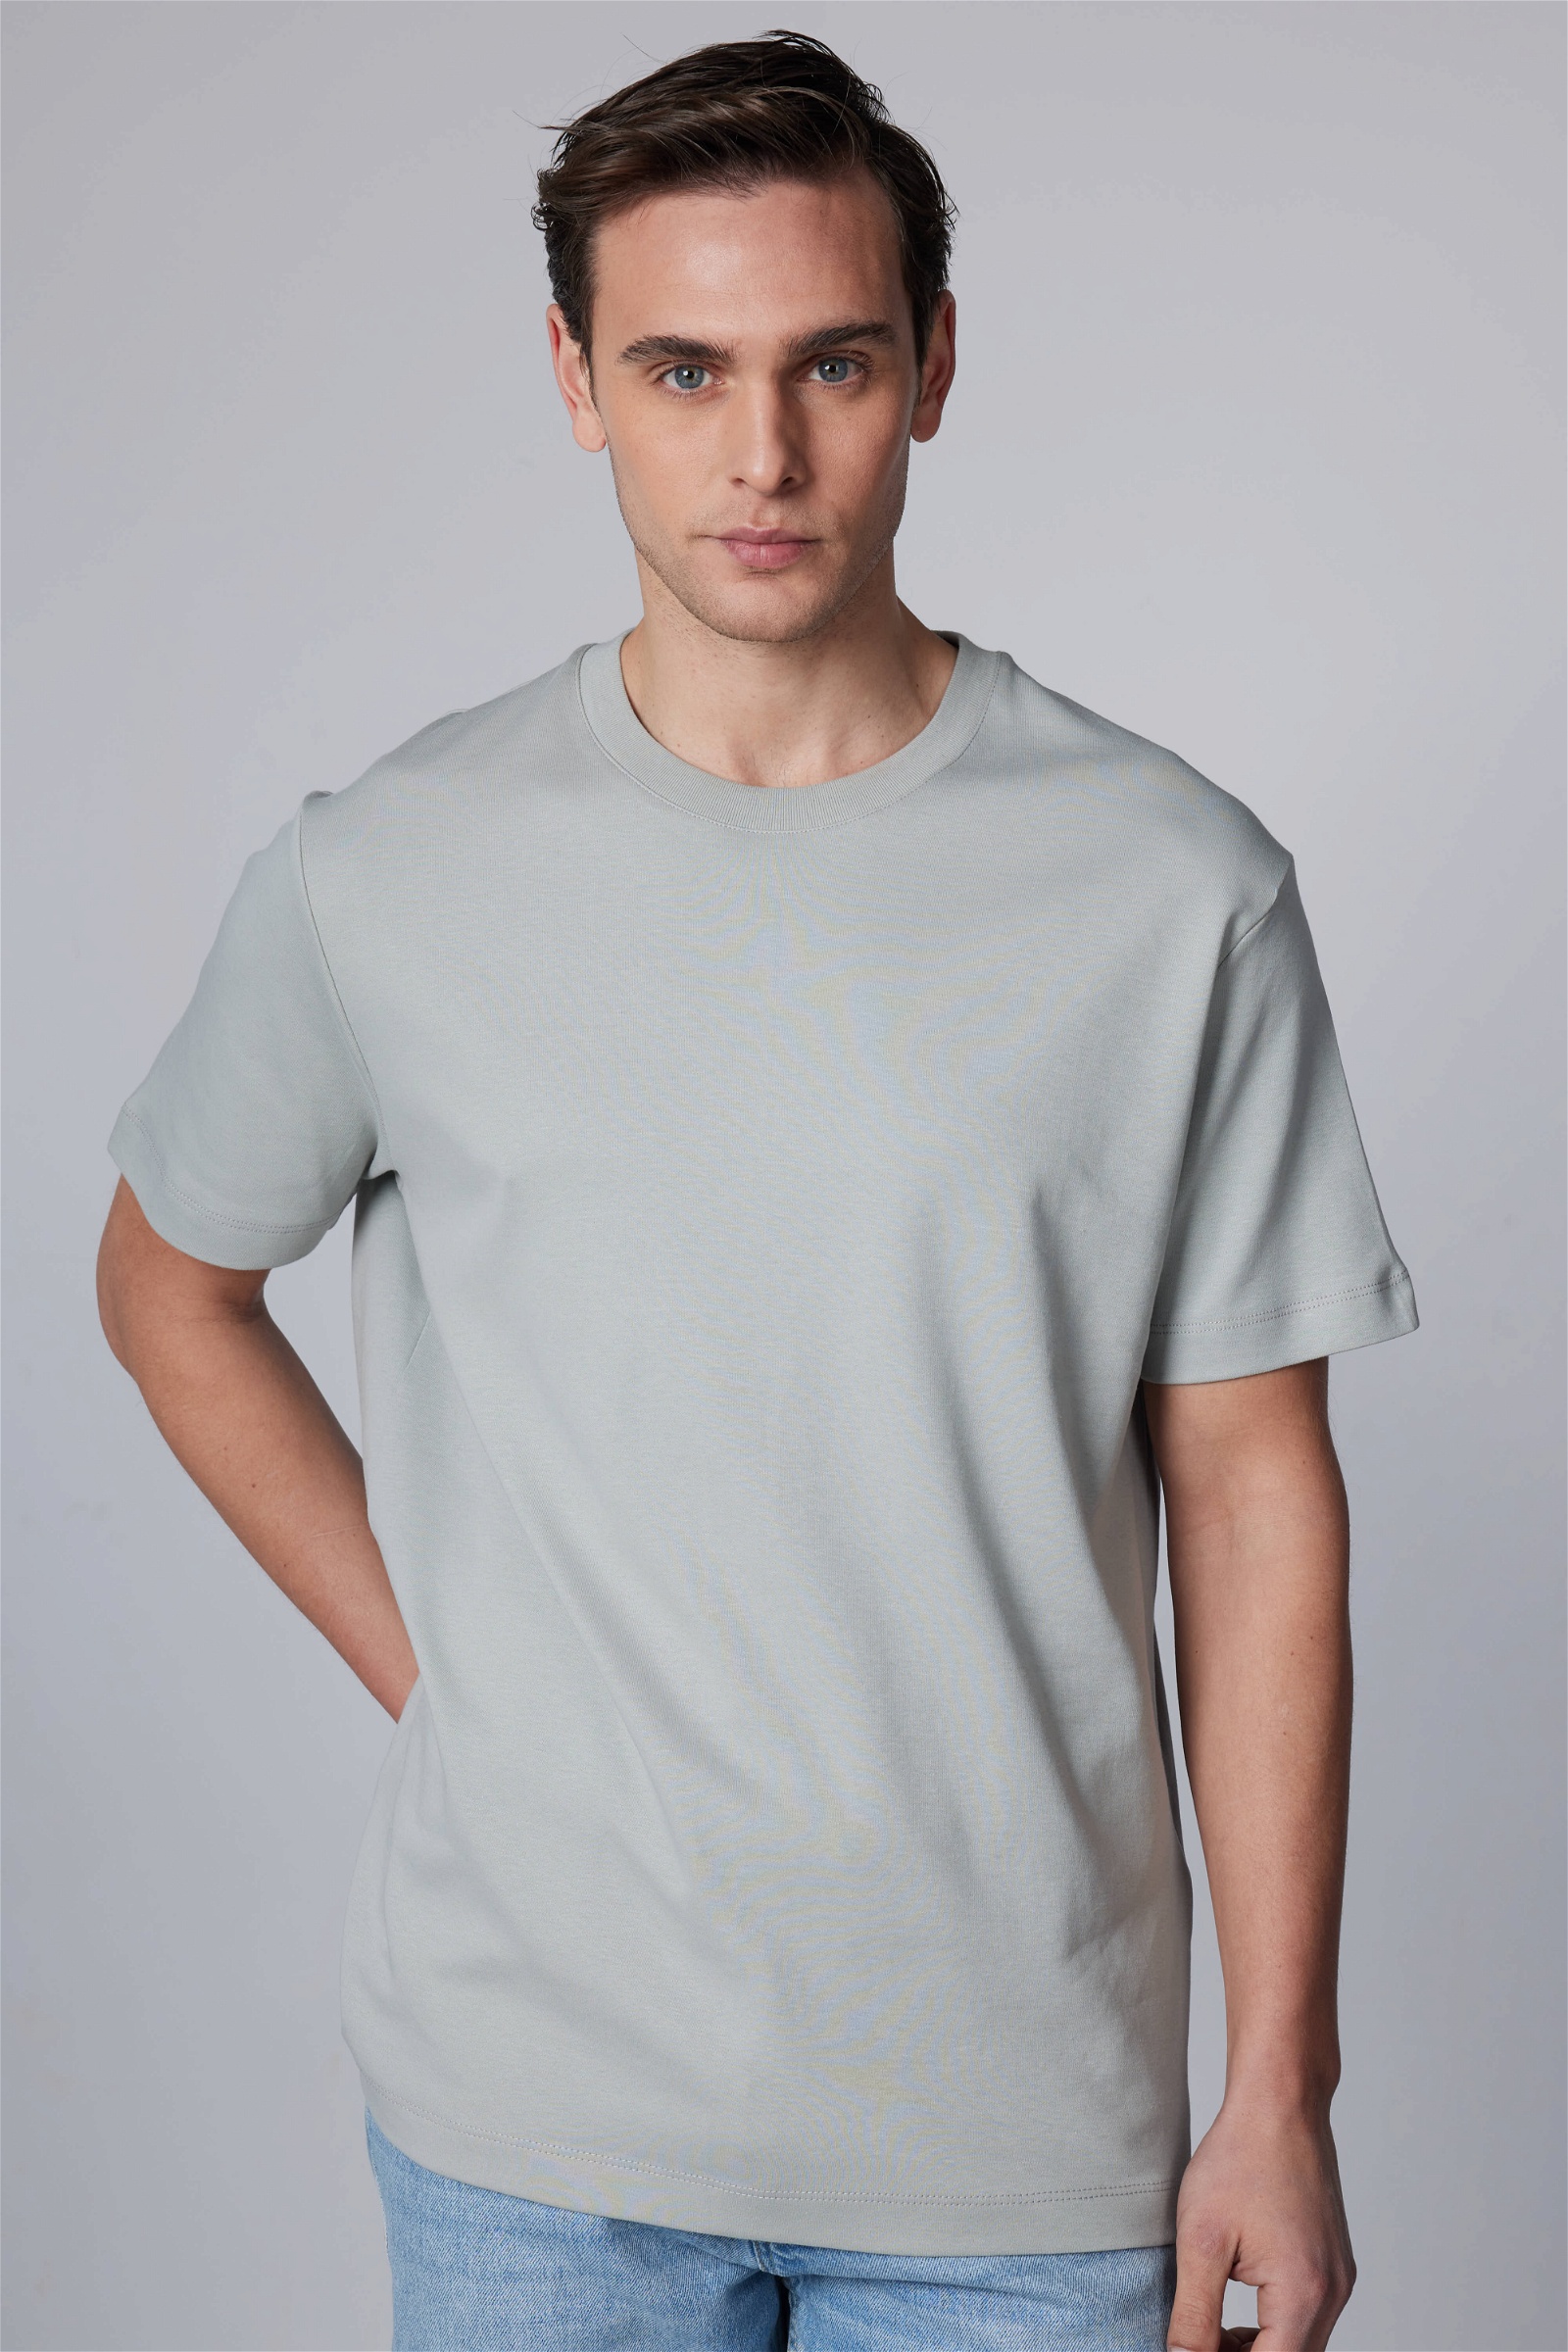 Plain Grey T-Shirt